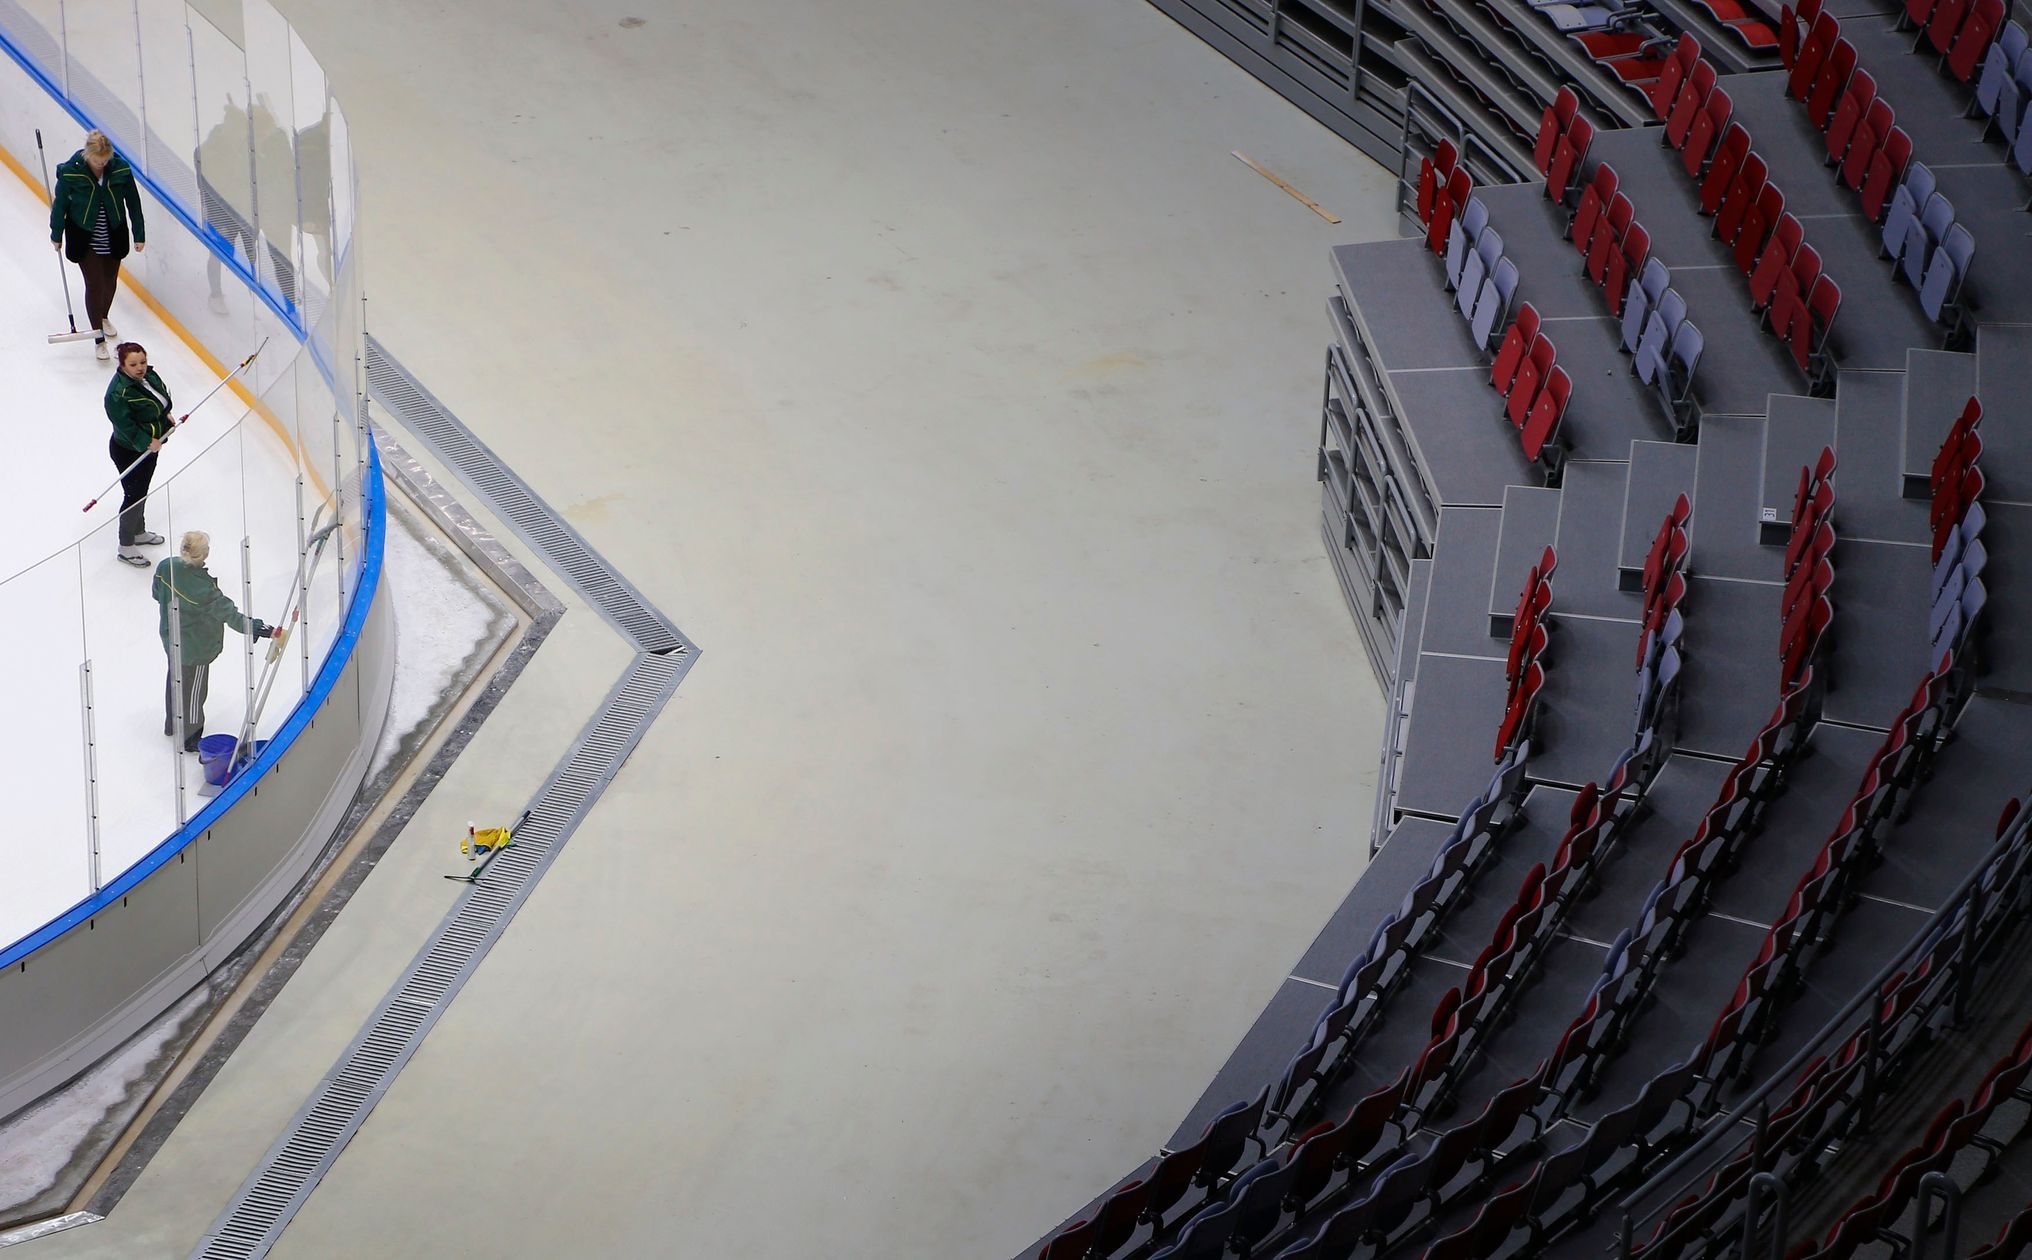 Ice Dome, zimní stadion, kde se bude hrát olympijský turnaj v Soči 2014